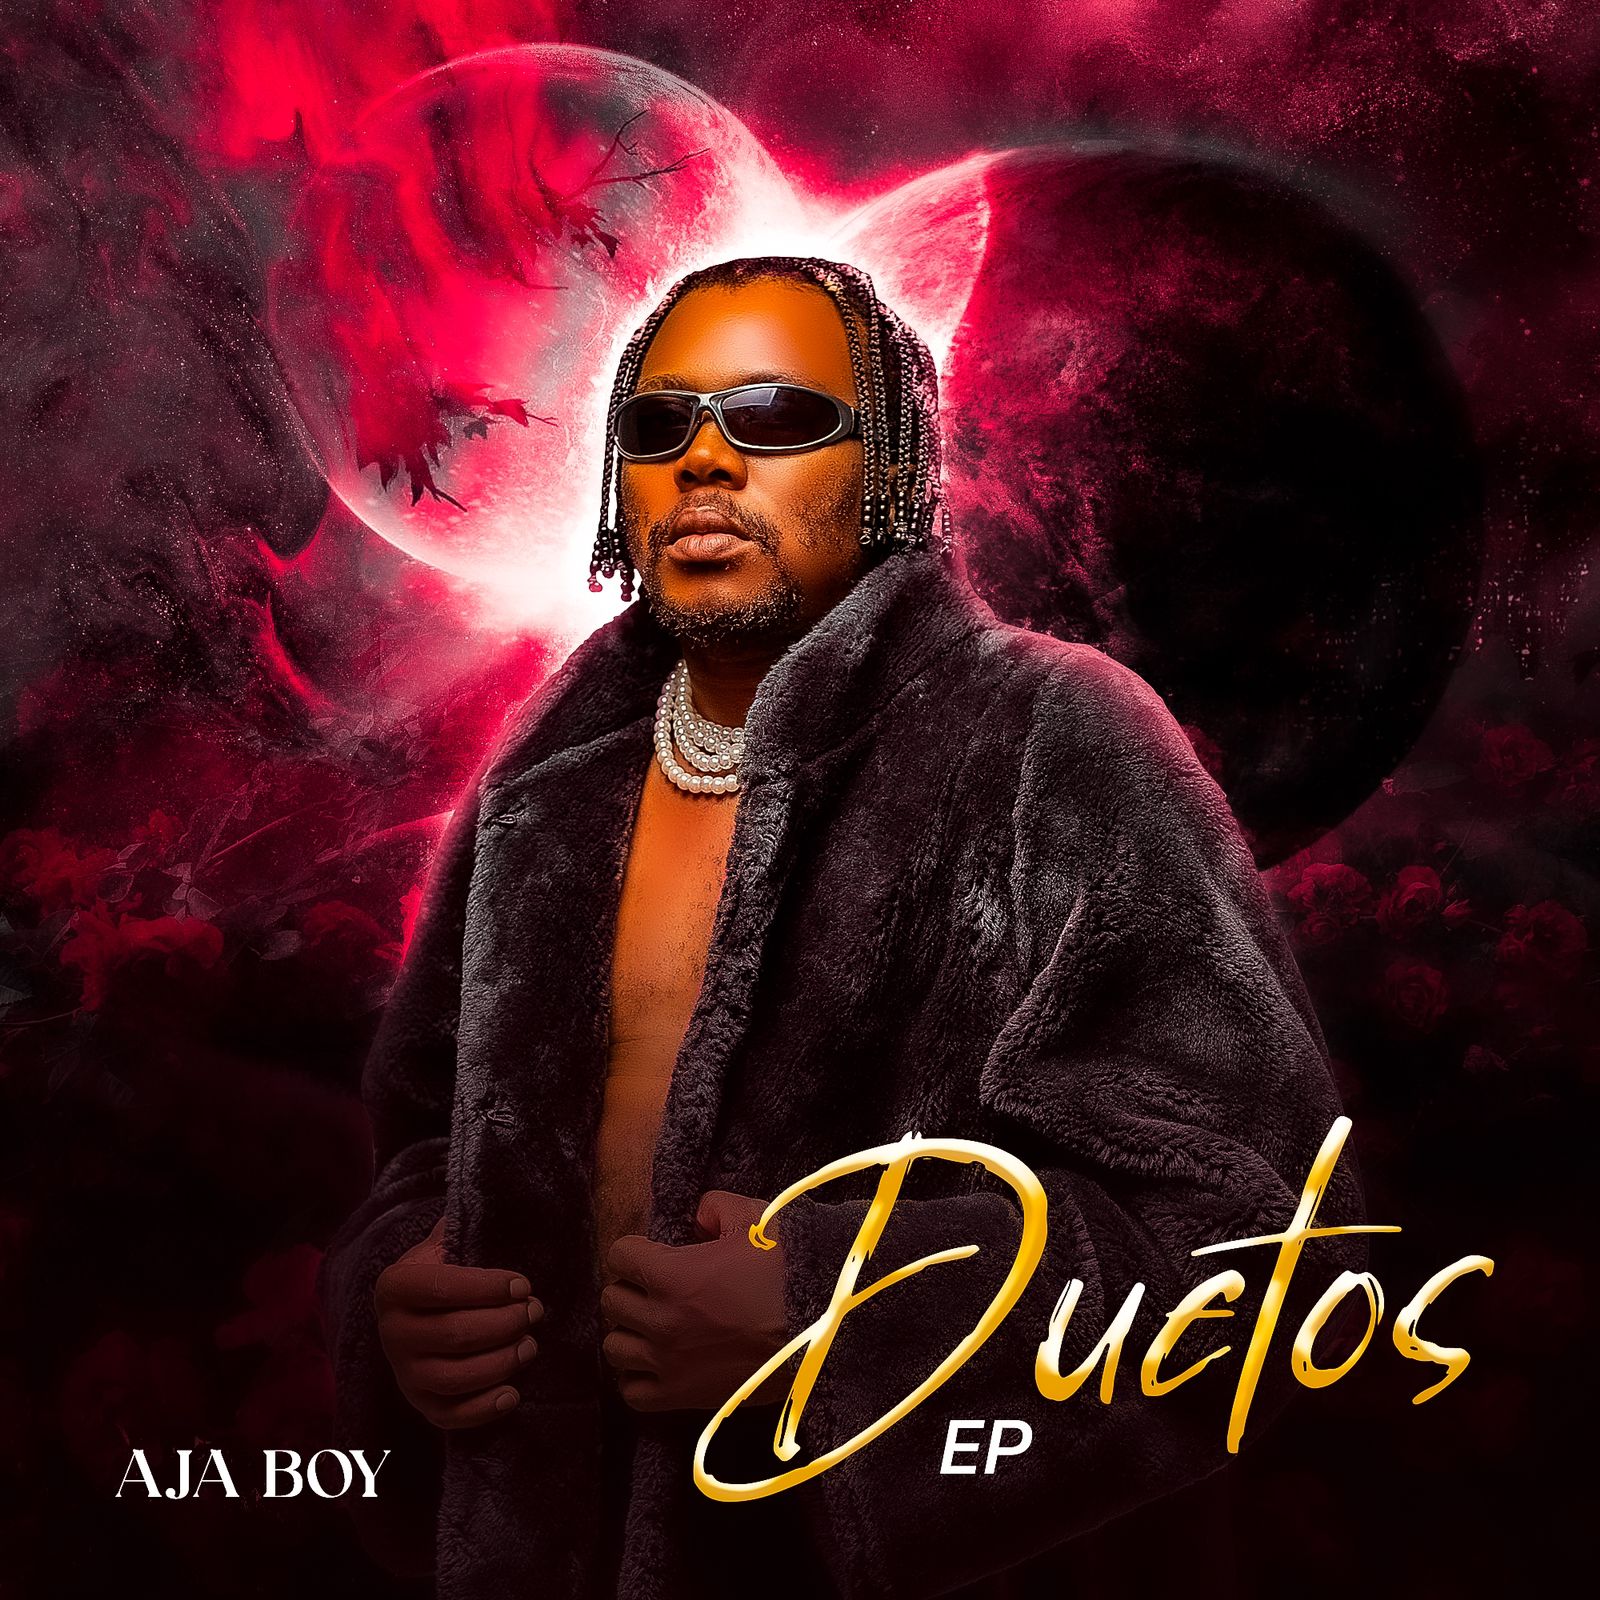 Aja Boy – Duetos EP